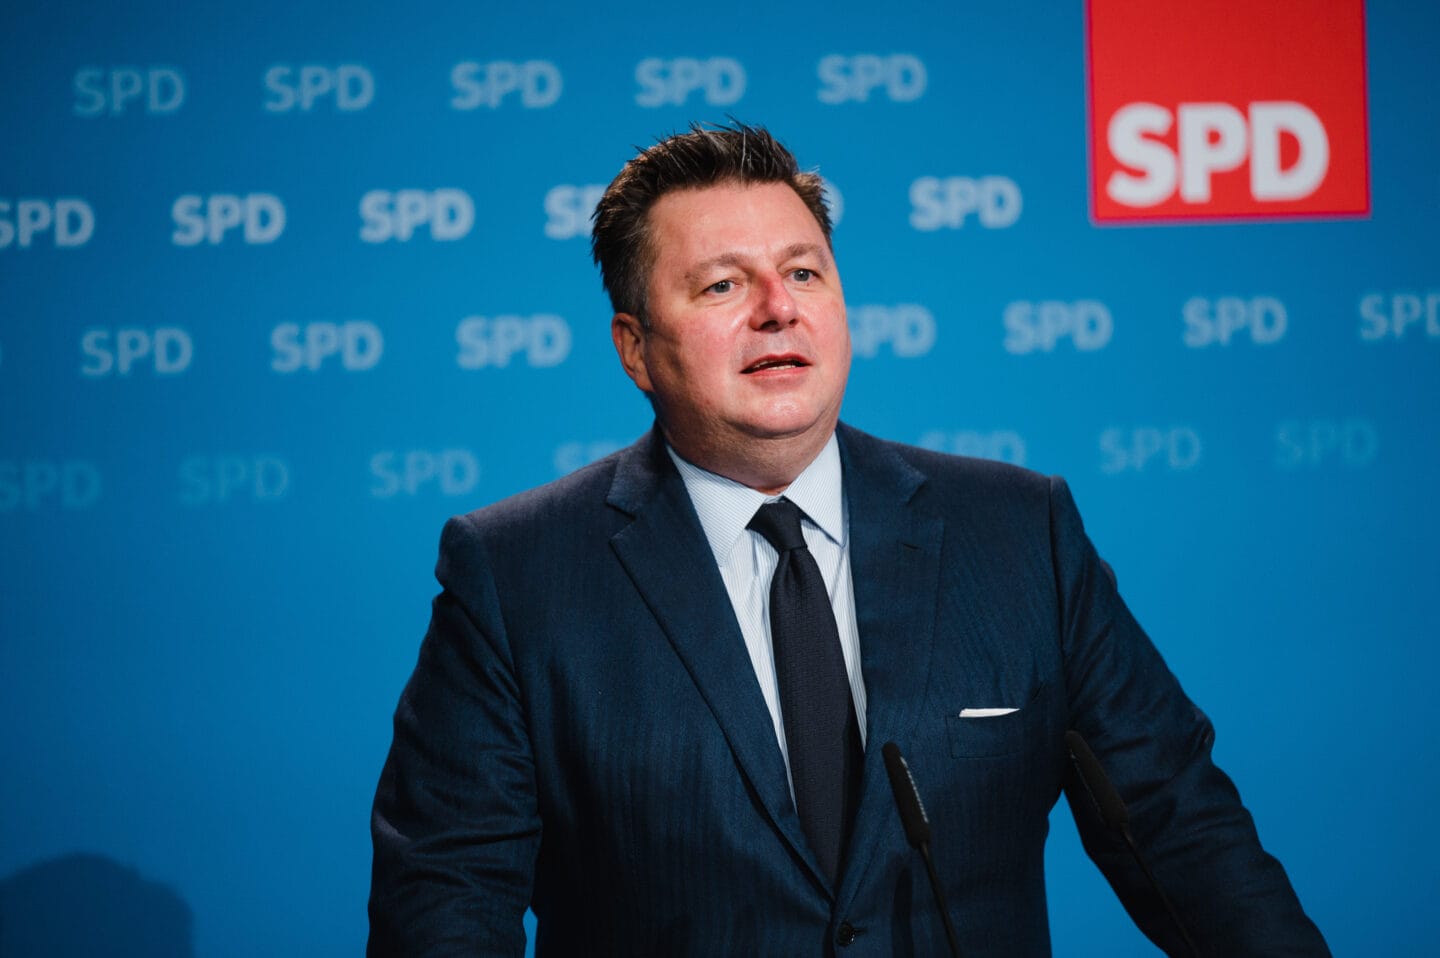 Berliner Modell: SPD Berlin führt erfolgreich ersten digitalen Parteitag durch 6